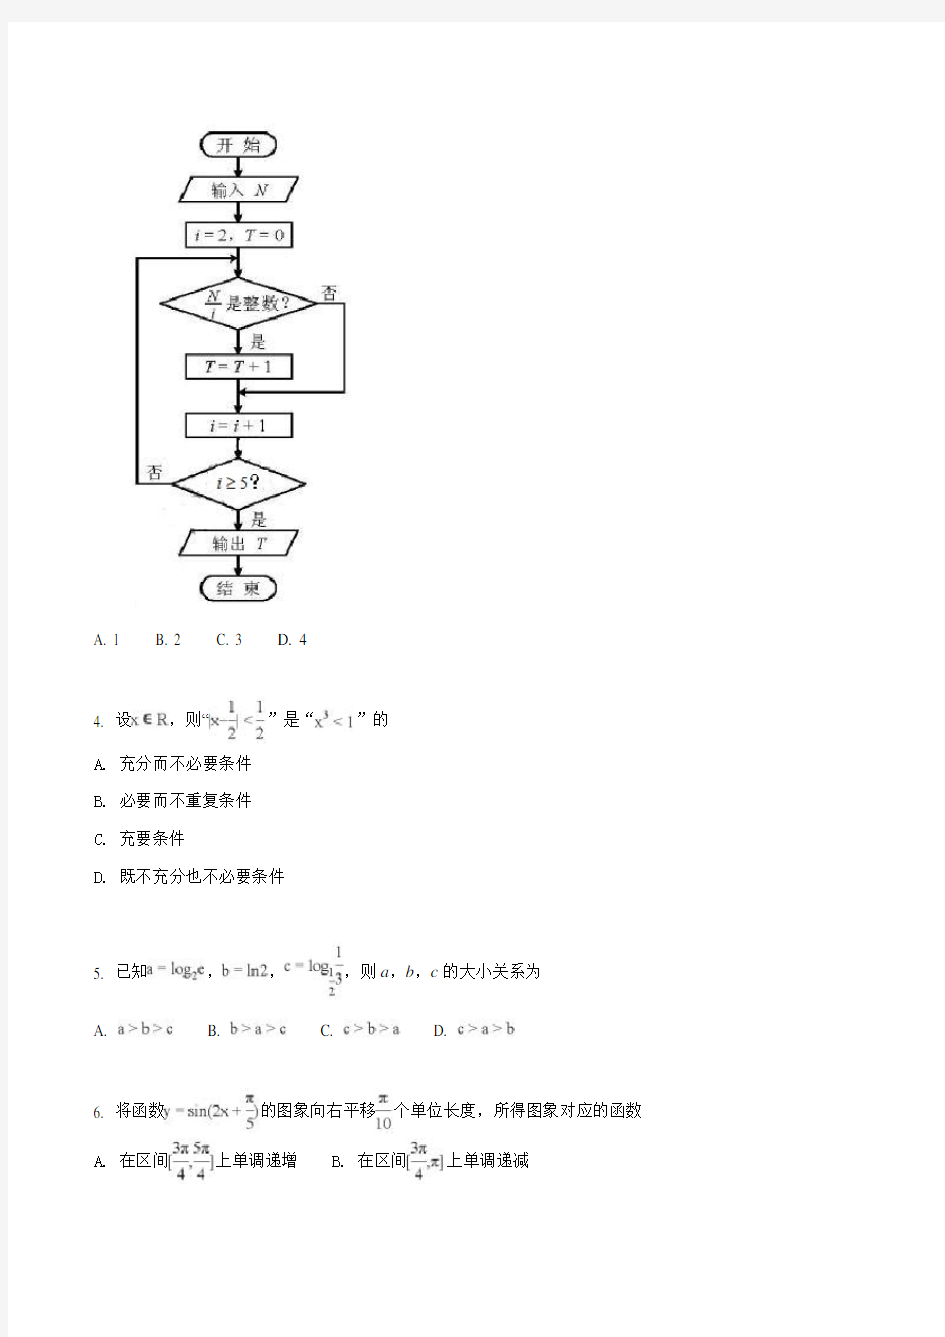 2018年高考真题——理科数学(天津卷)